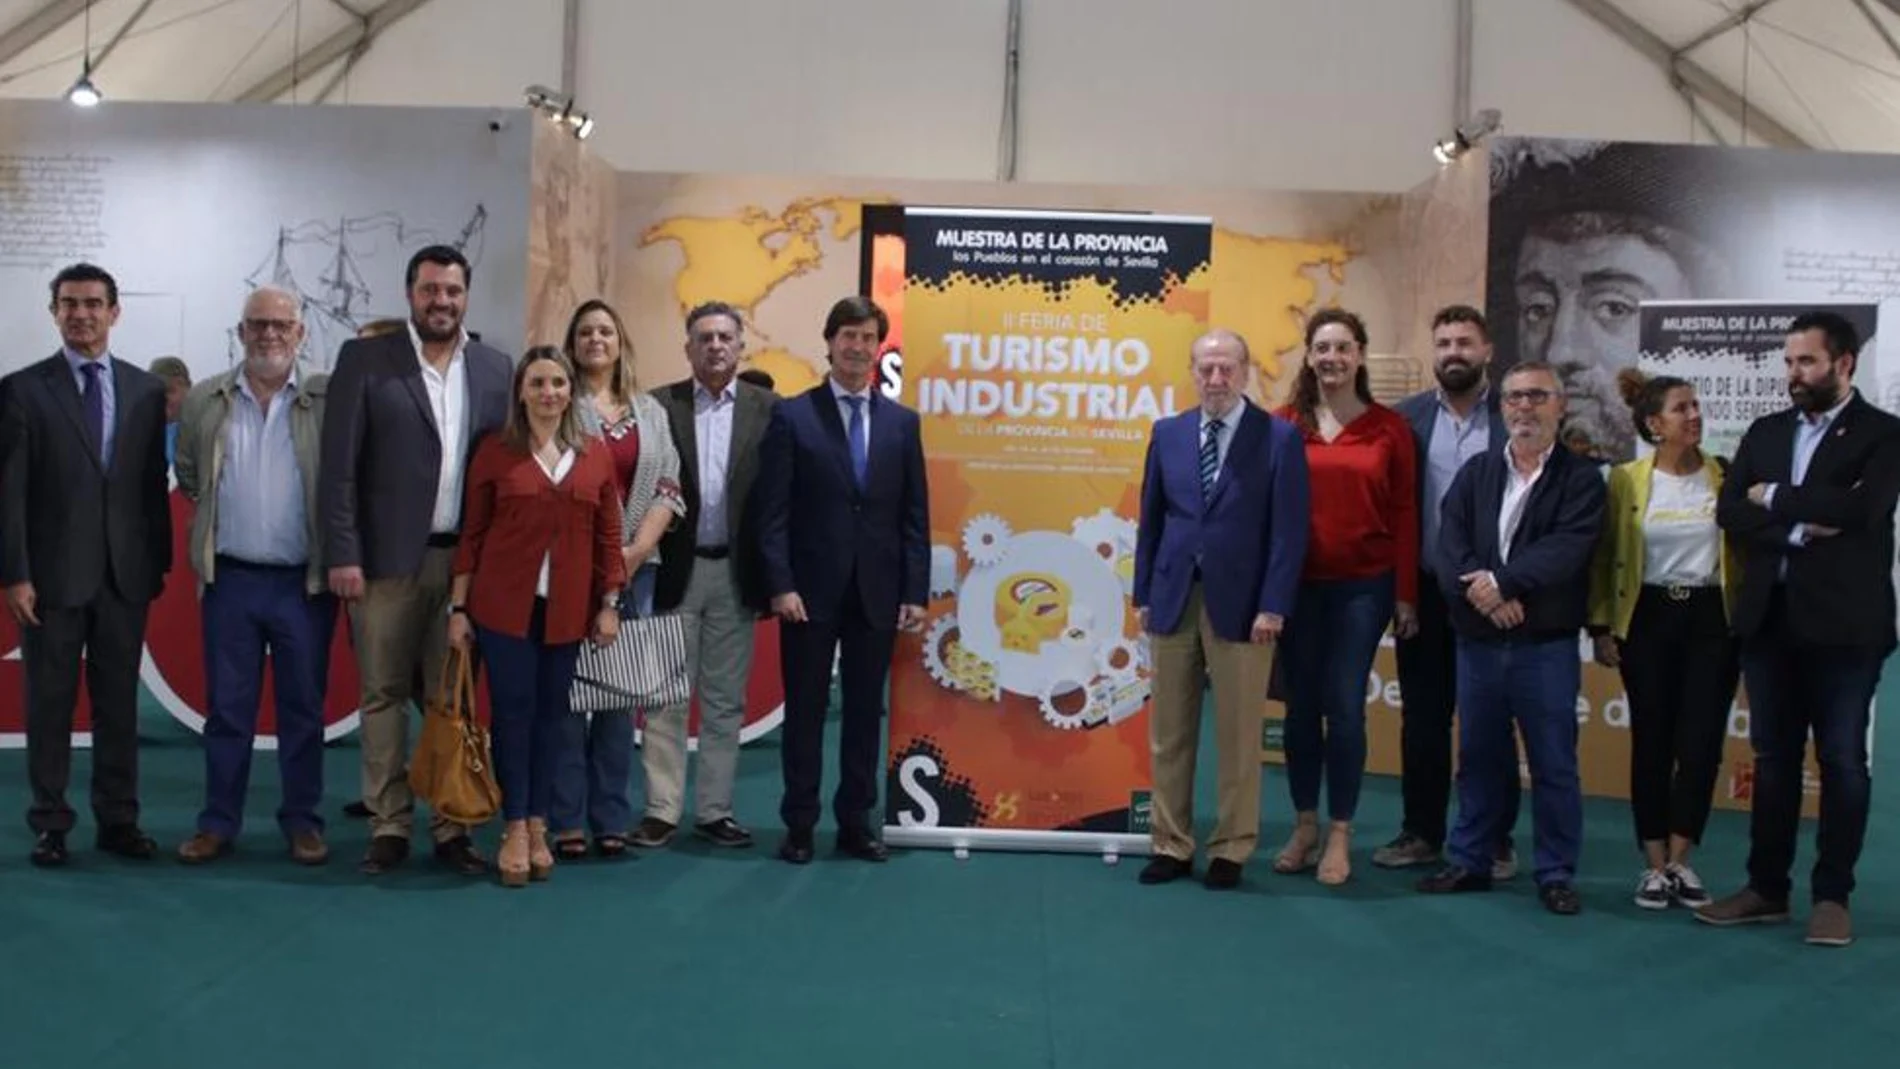 Arranca la II Feria de Turismo Industrial en Sevilla